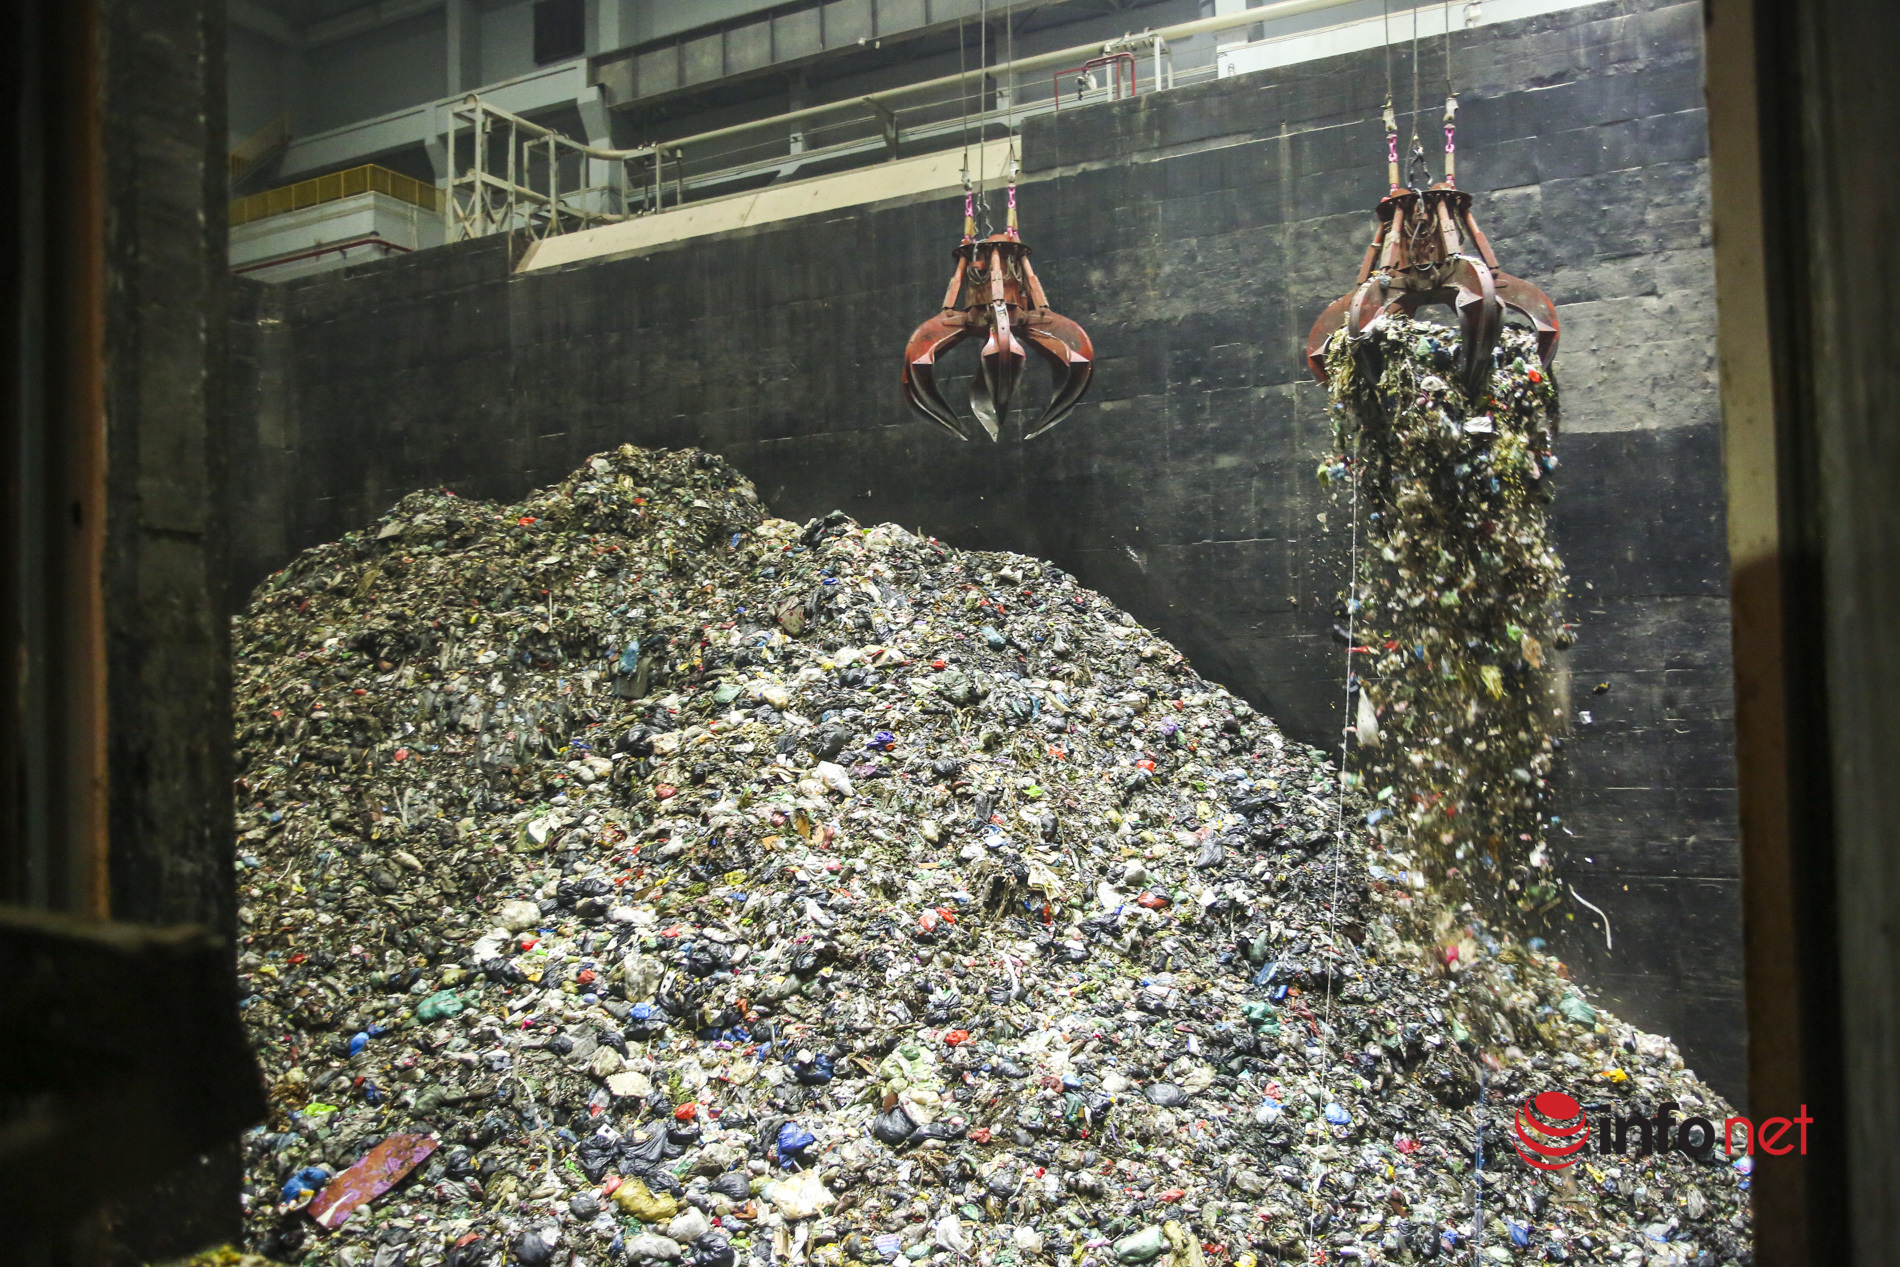 nhà máy điện rác sóc sơn,rác Hà Nội,ô nhiễm môi trường,rác thải ùn ứ,bãi rác Nam Sơn